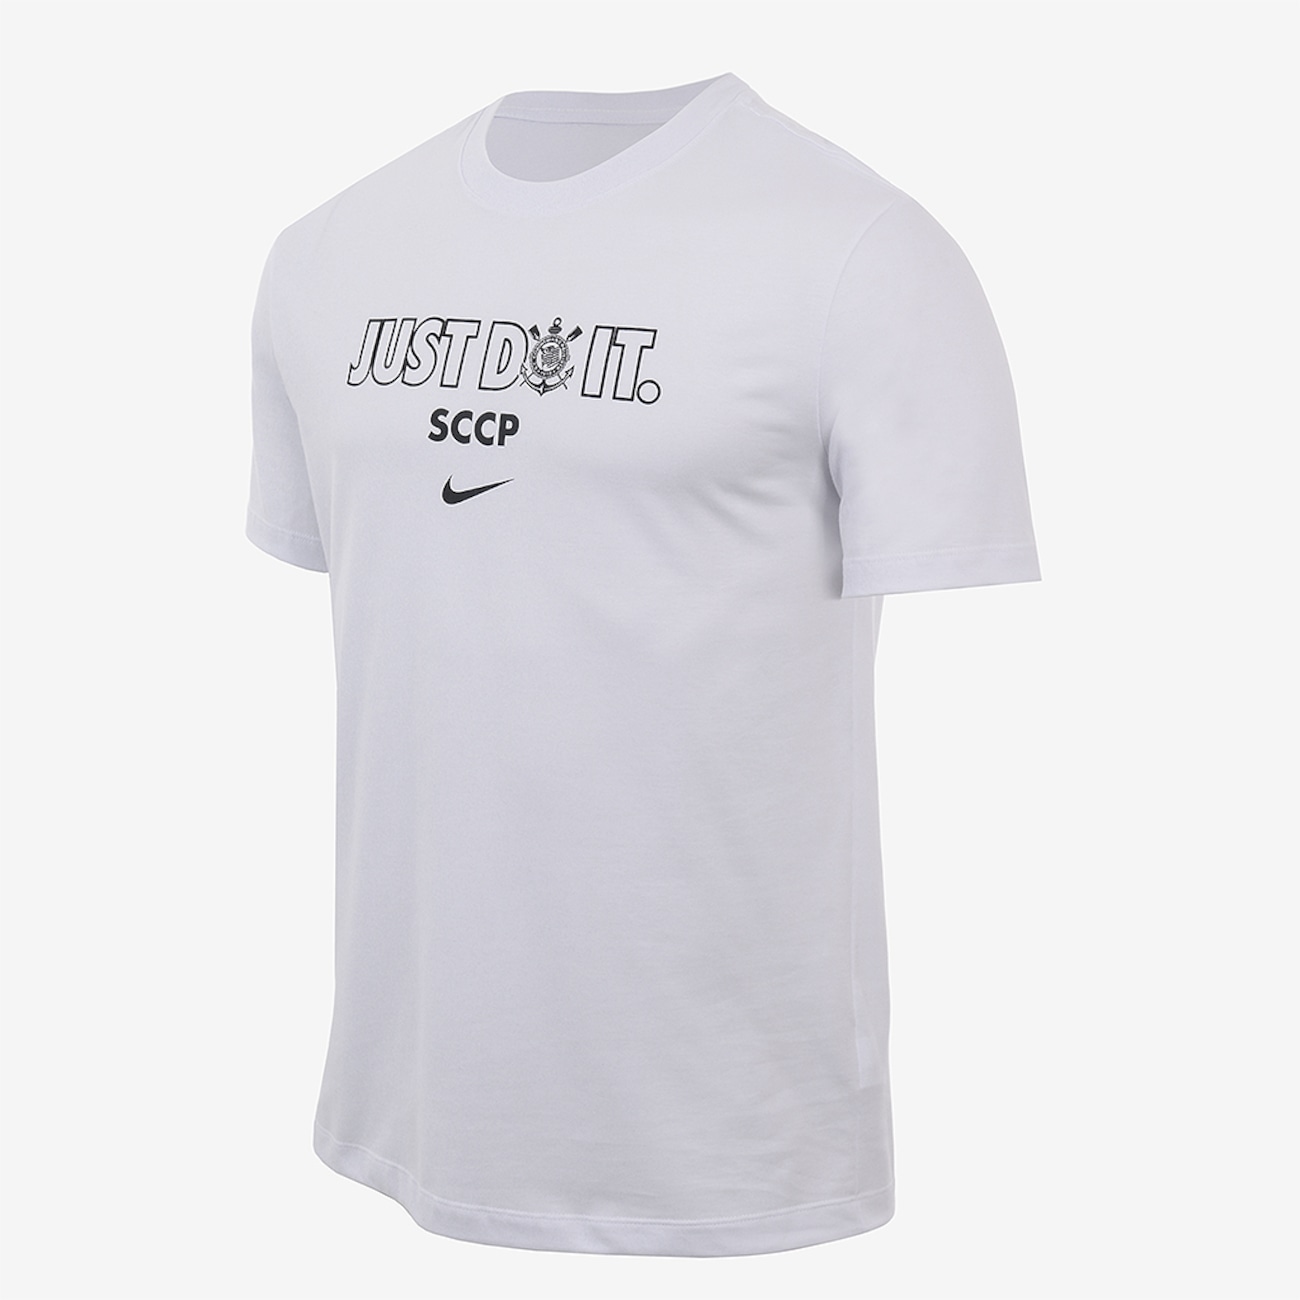 Camiseta Nike Corinthians Just Do It Masculina